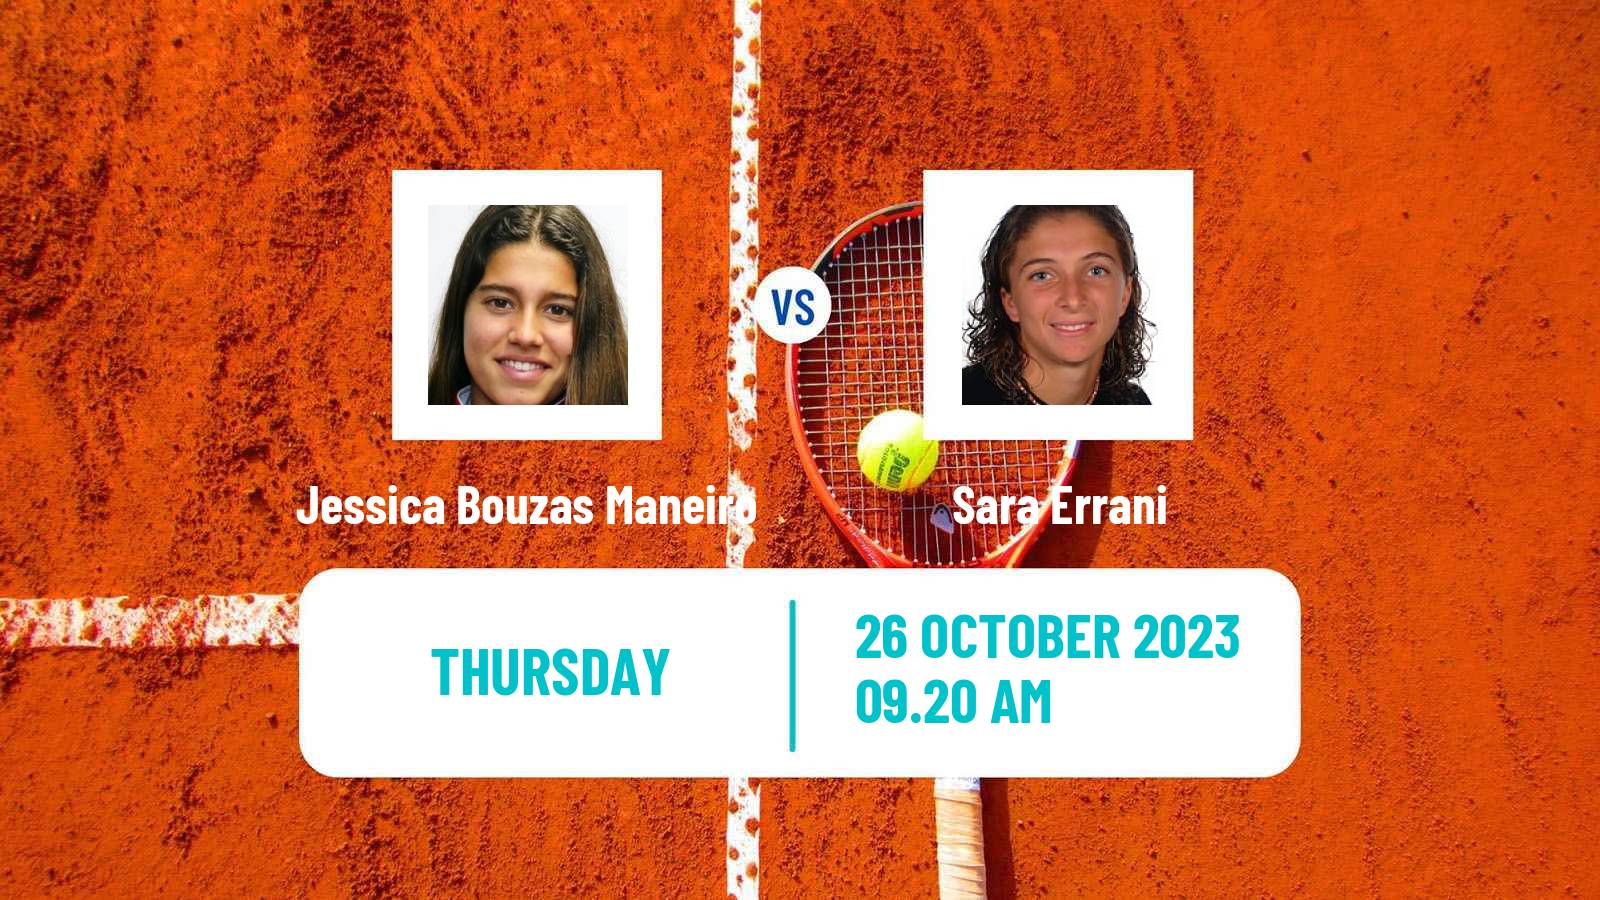 Tennis ITF W100 Les Franqueses Del Valles Women Jessica Bouzas Maneiro - Sara Errani